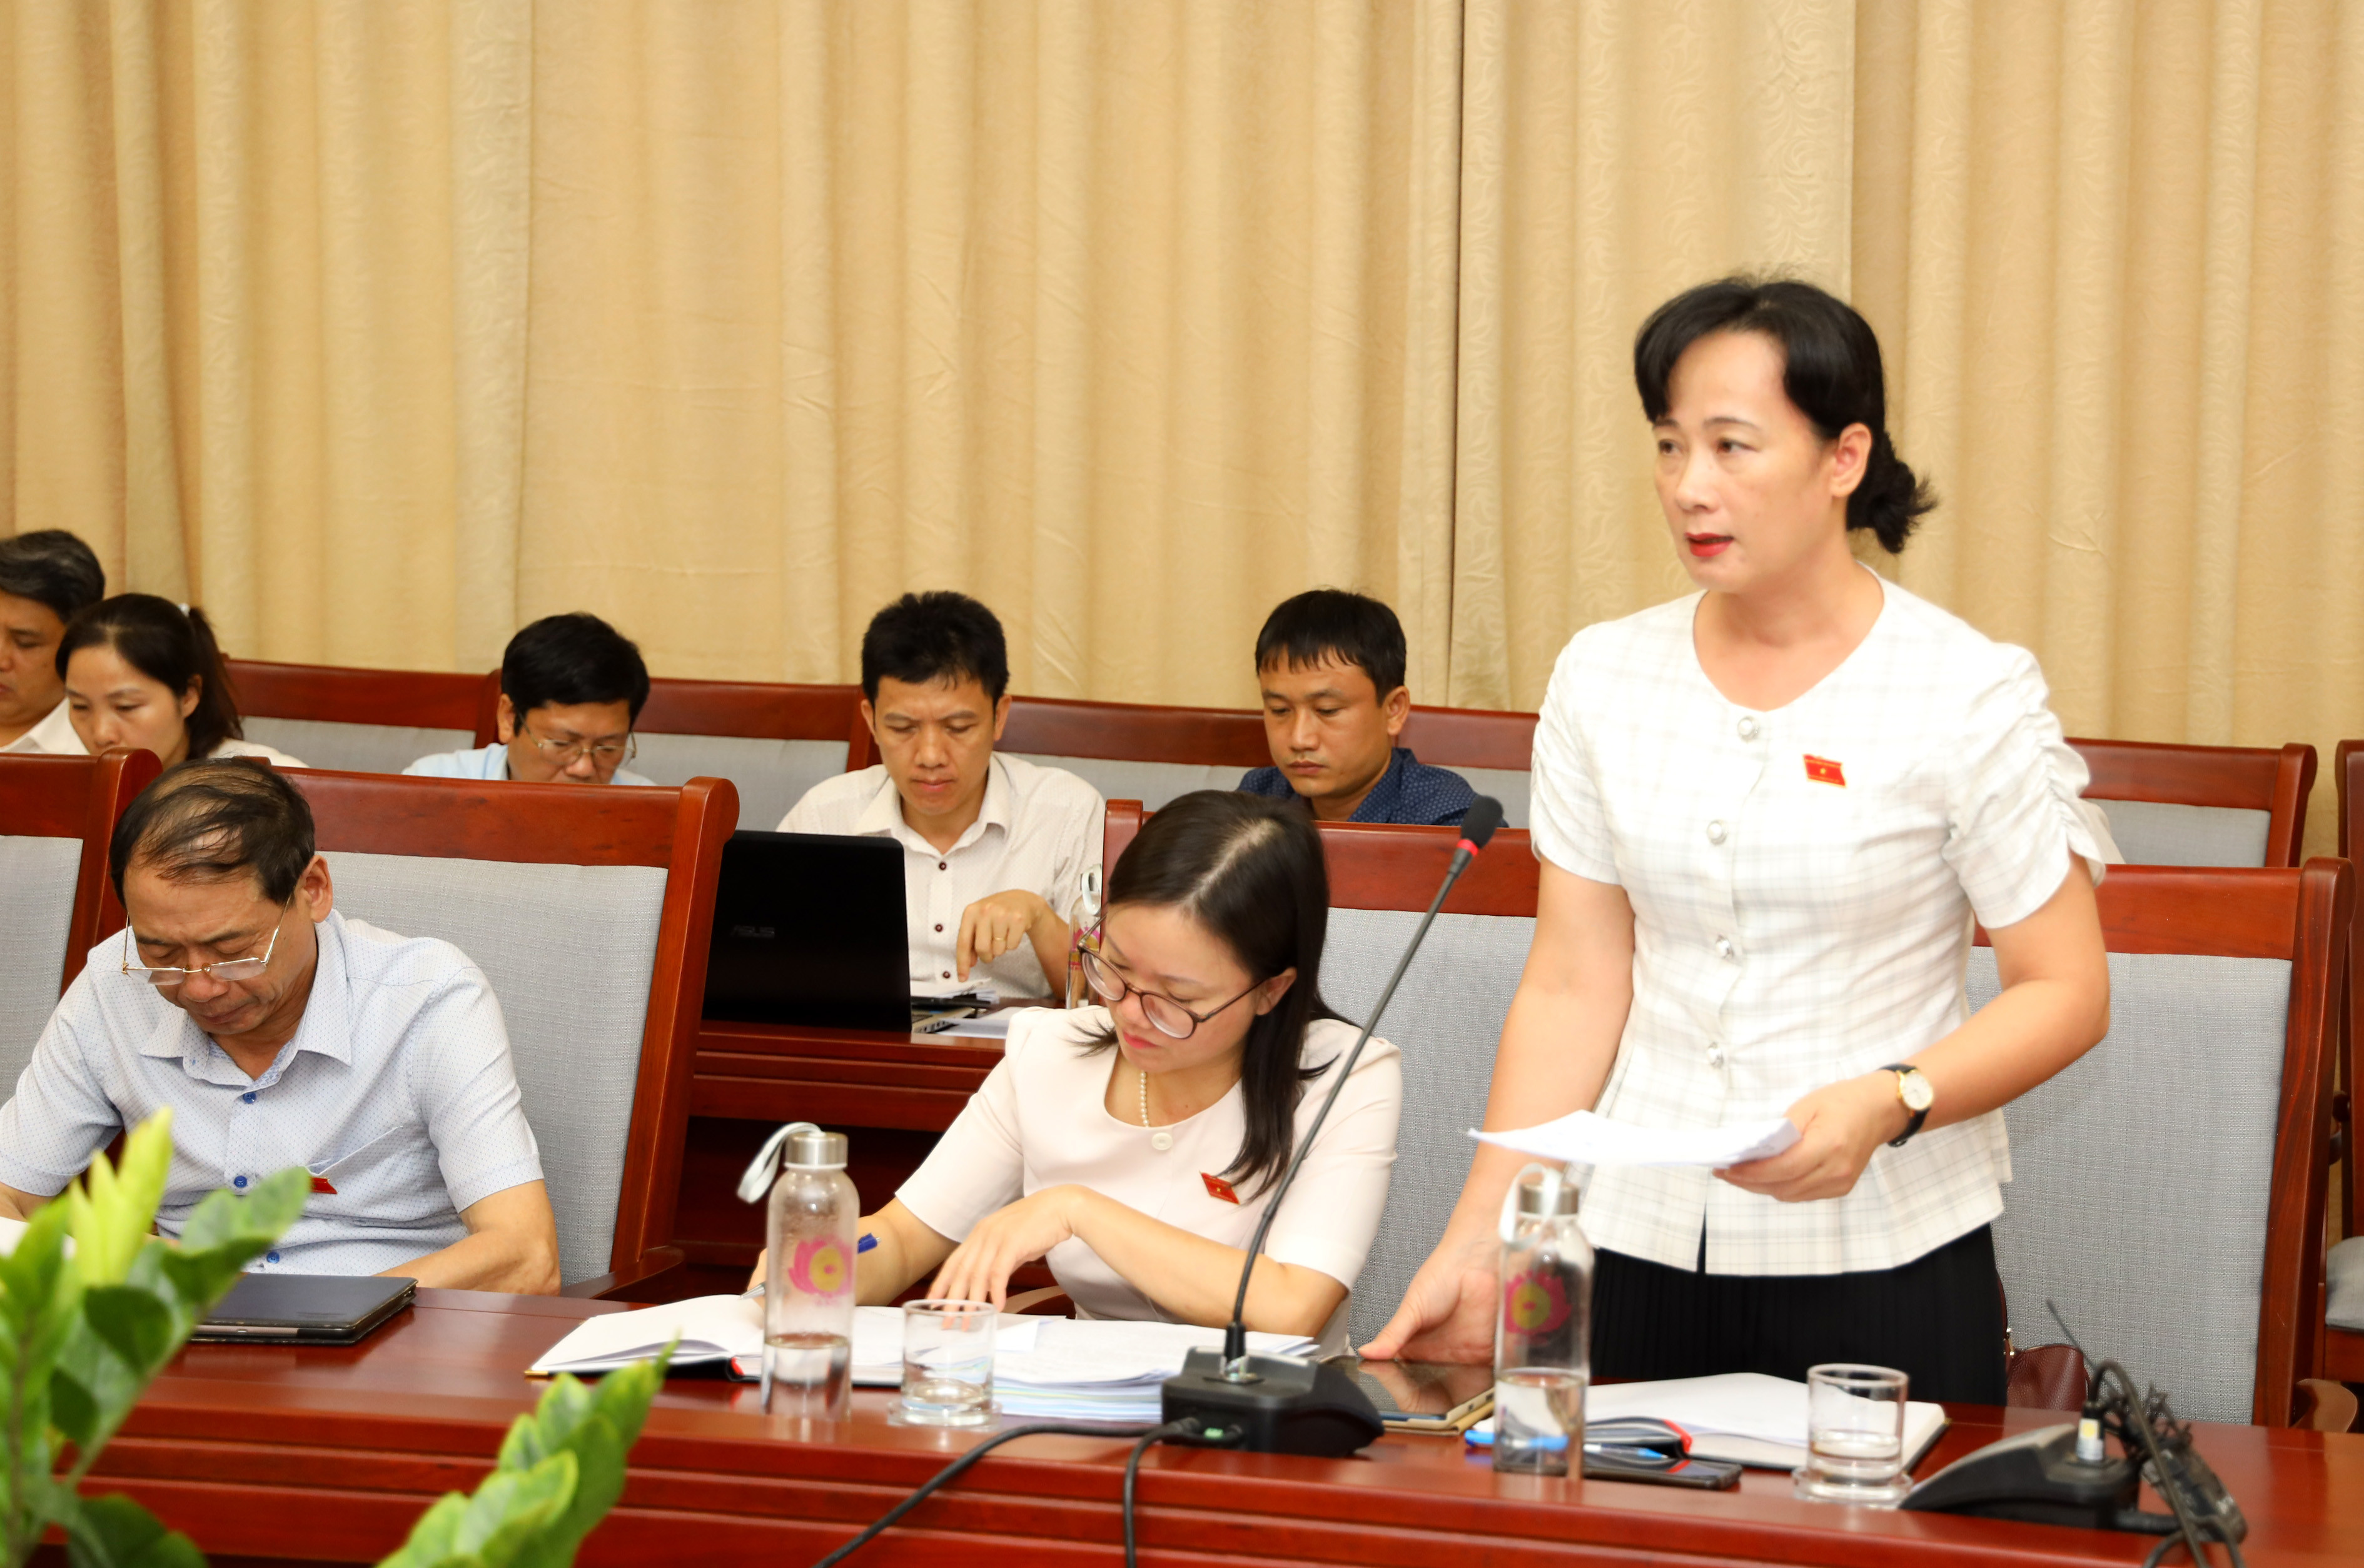 Bà Phan Thị Hoan - Phó Bí thư Đảng ủy Doanh nghiệp đề xuất các cấp, ngành tiếp tục quan tâm hỗ trợ doanh nghiệp vượt qua khó khăn sau đại dịch Covid-19. Ảnh Nguyên Nguyên